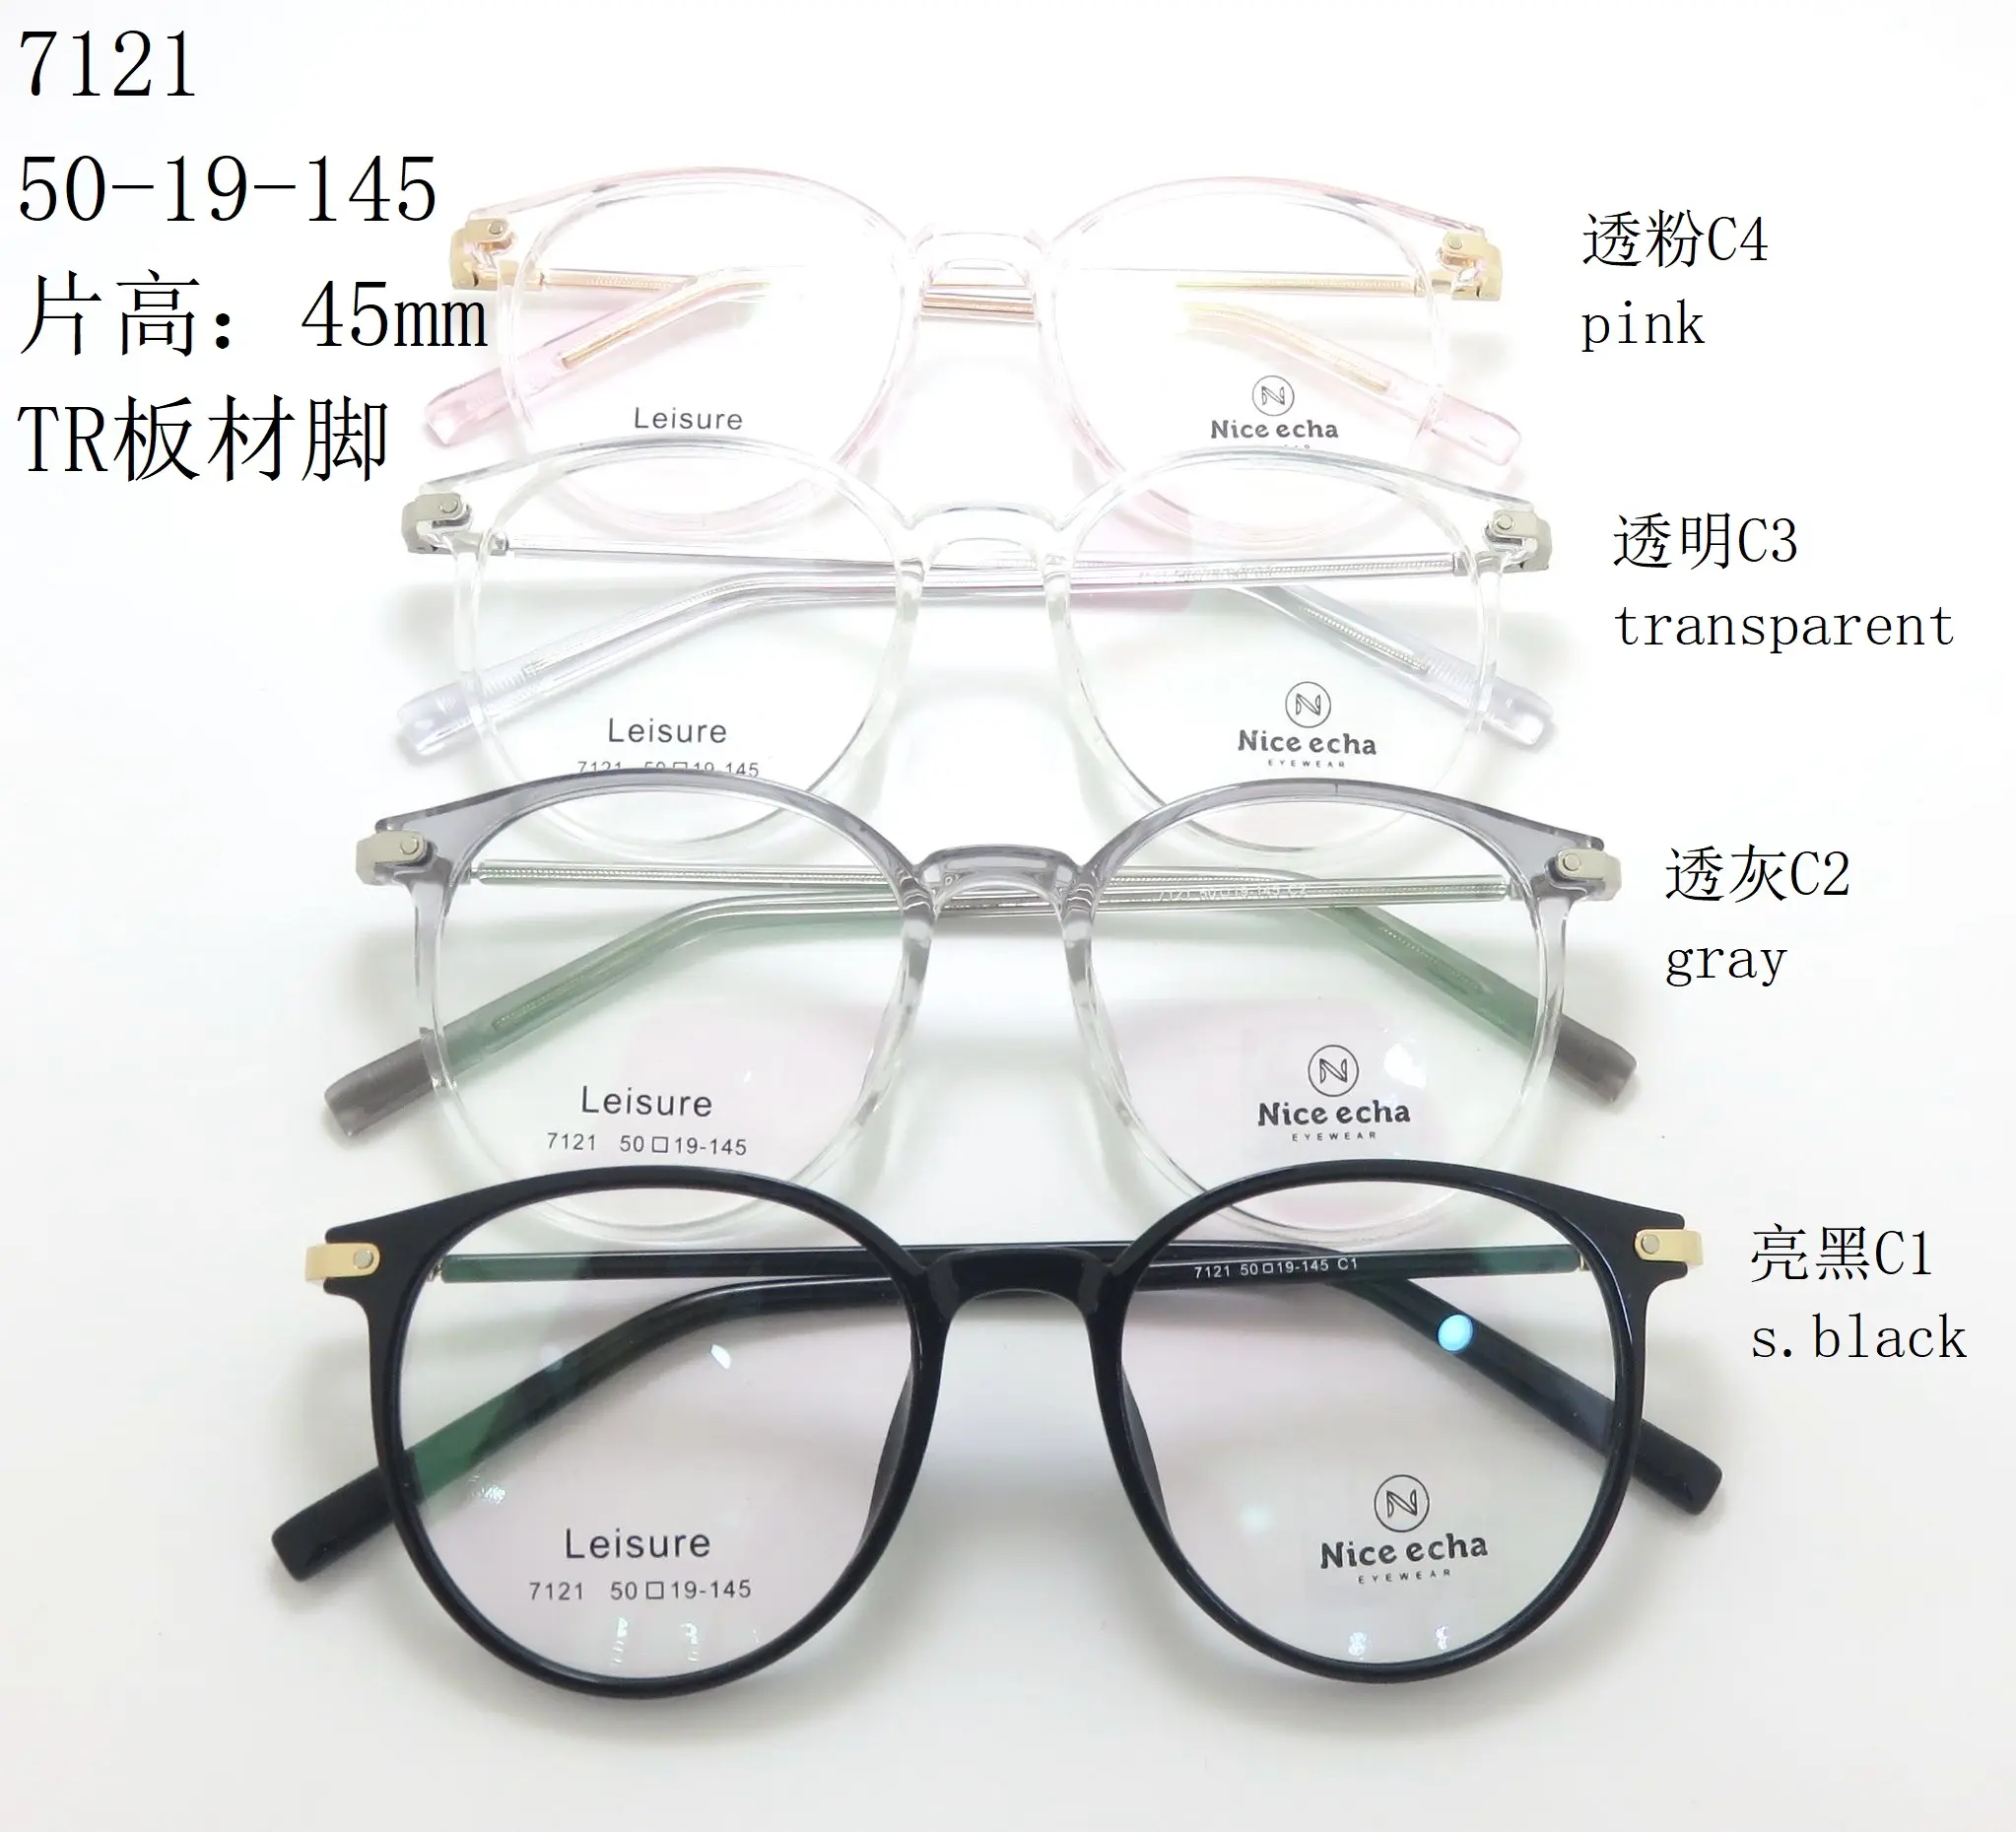 נחמד echa 7121 בהיר שחור Tr90 מקדש מתכת ערימת עדשת משקפיים מסגרת גדול טרנדי משקפיים